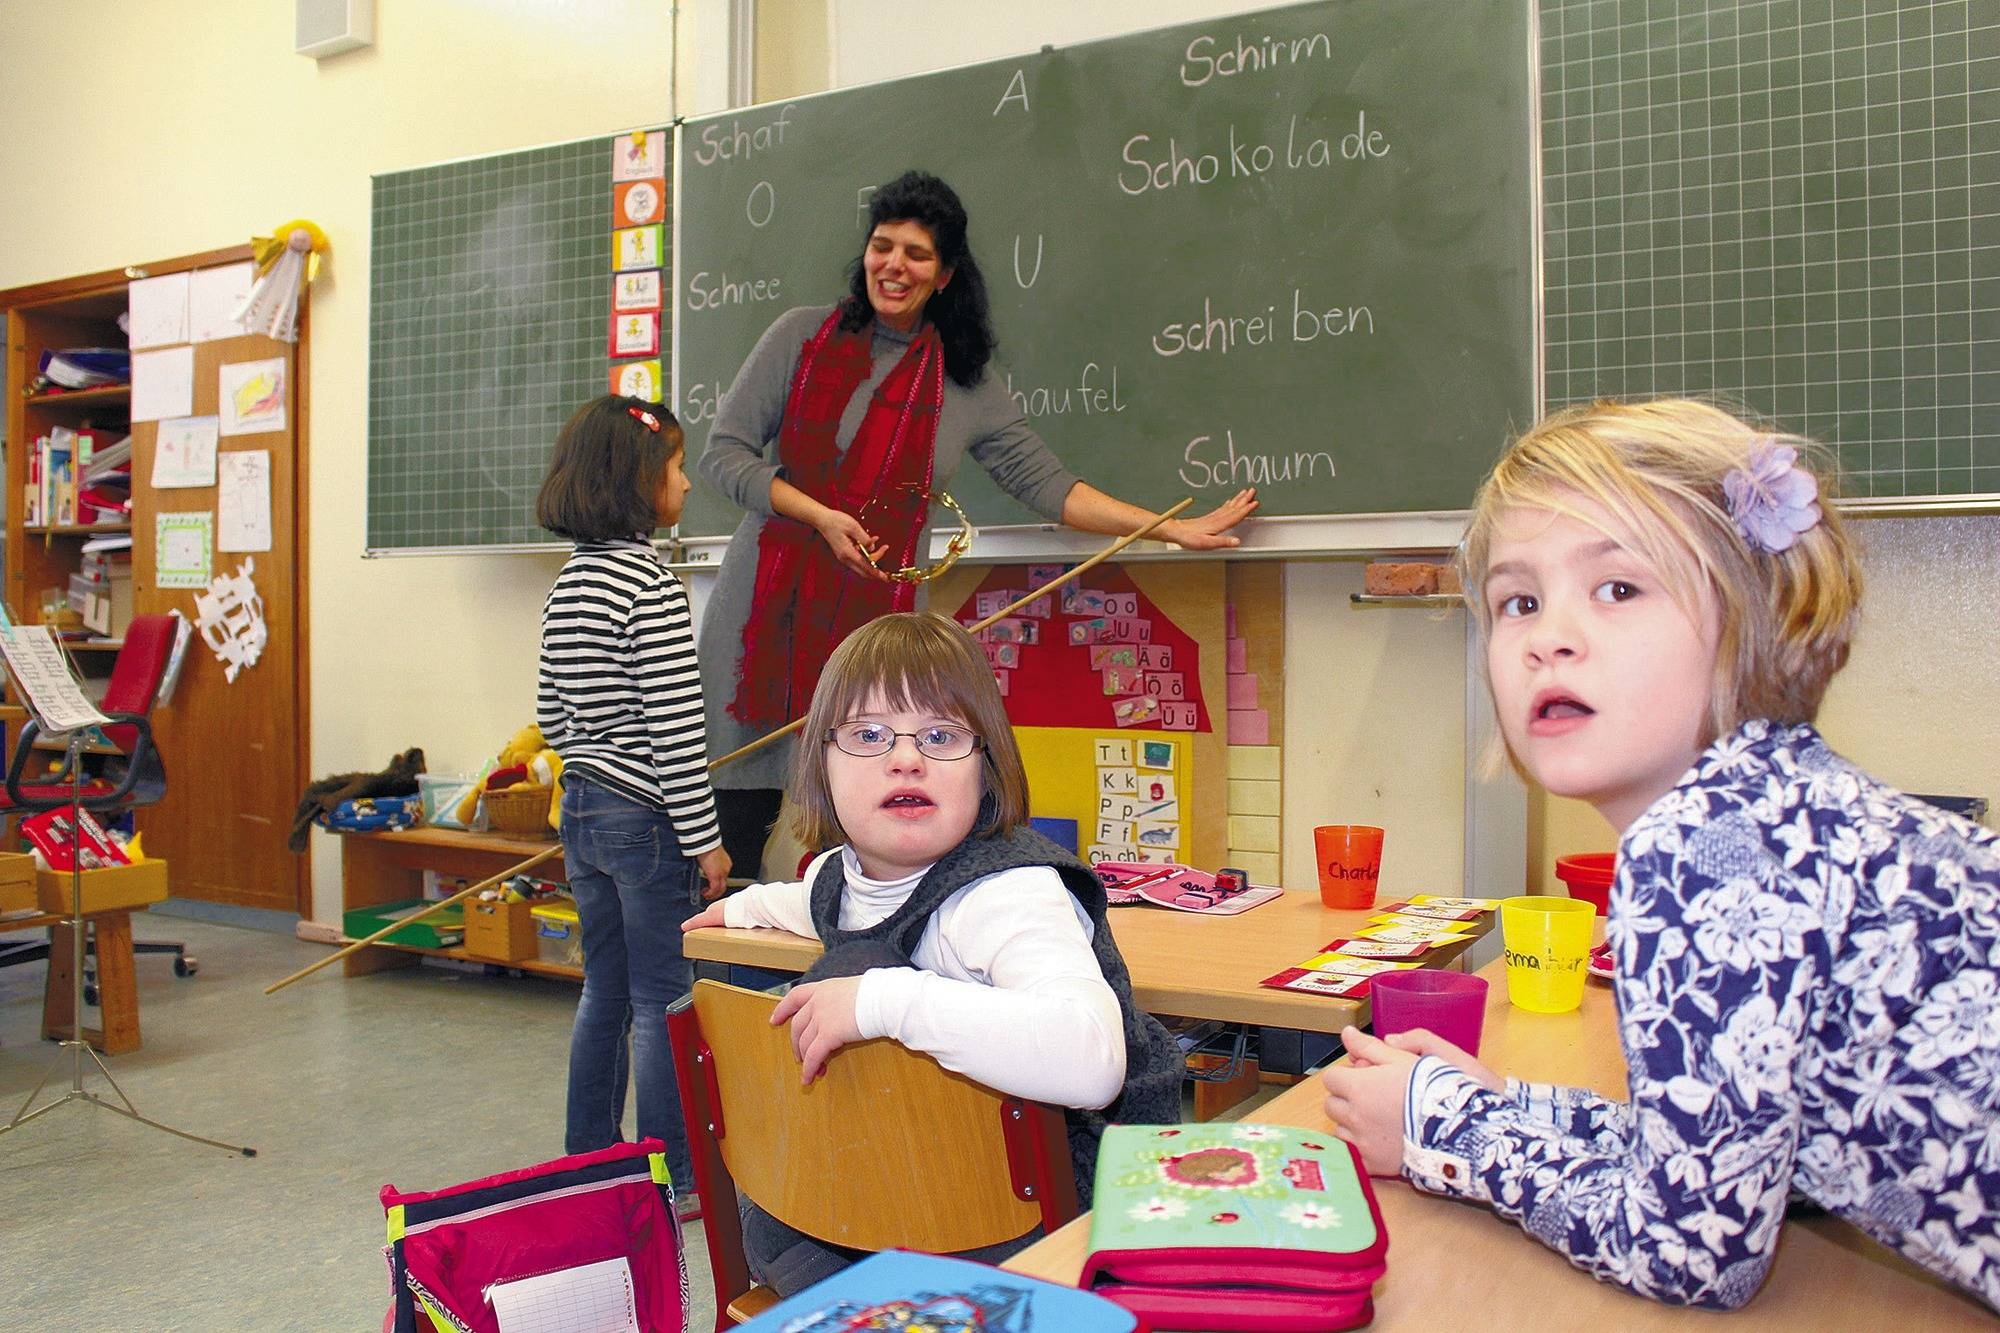 Ladenburg: Siebenjährige Mit Down-Syndrom Geht In &quot;Normale verwandt mit Kinder Bilder Ausserhalb Der Schule